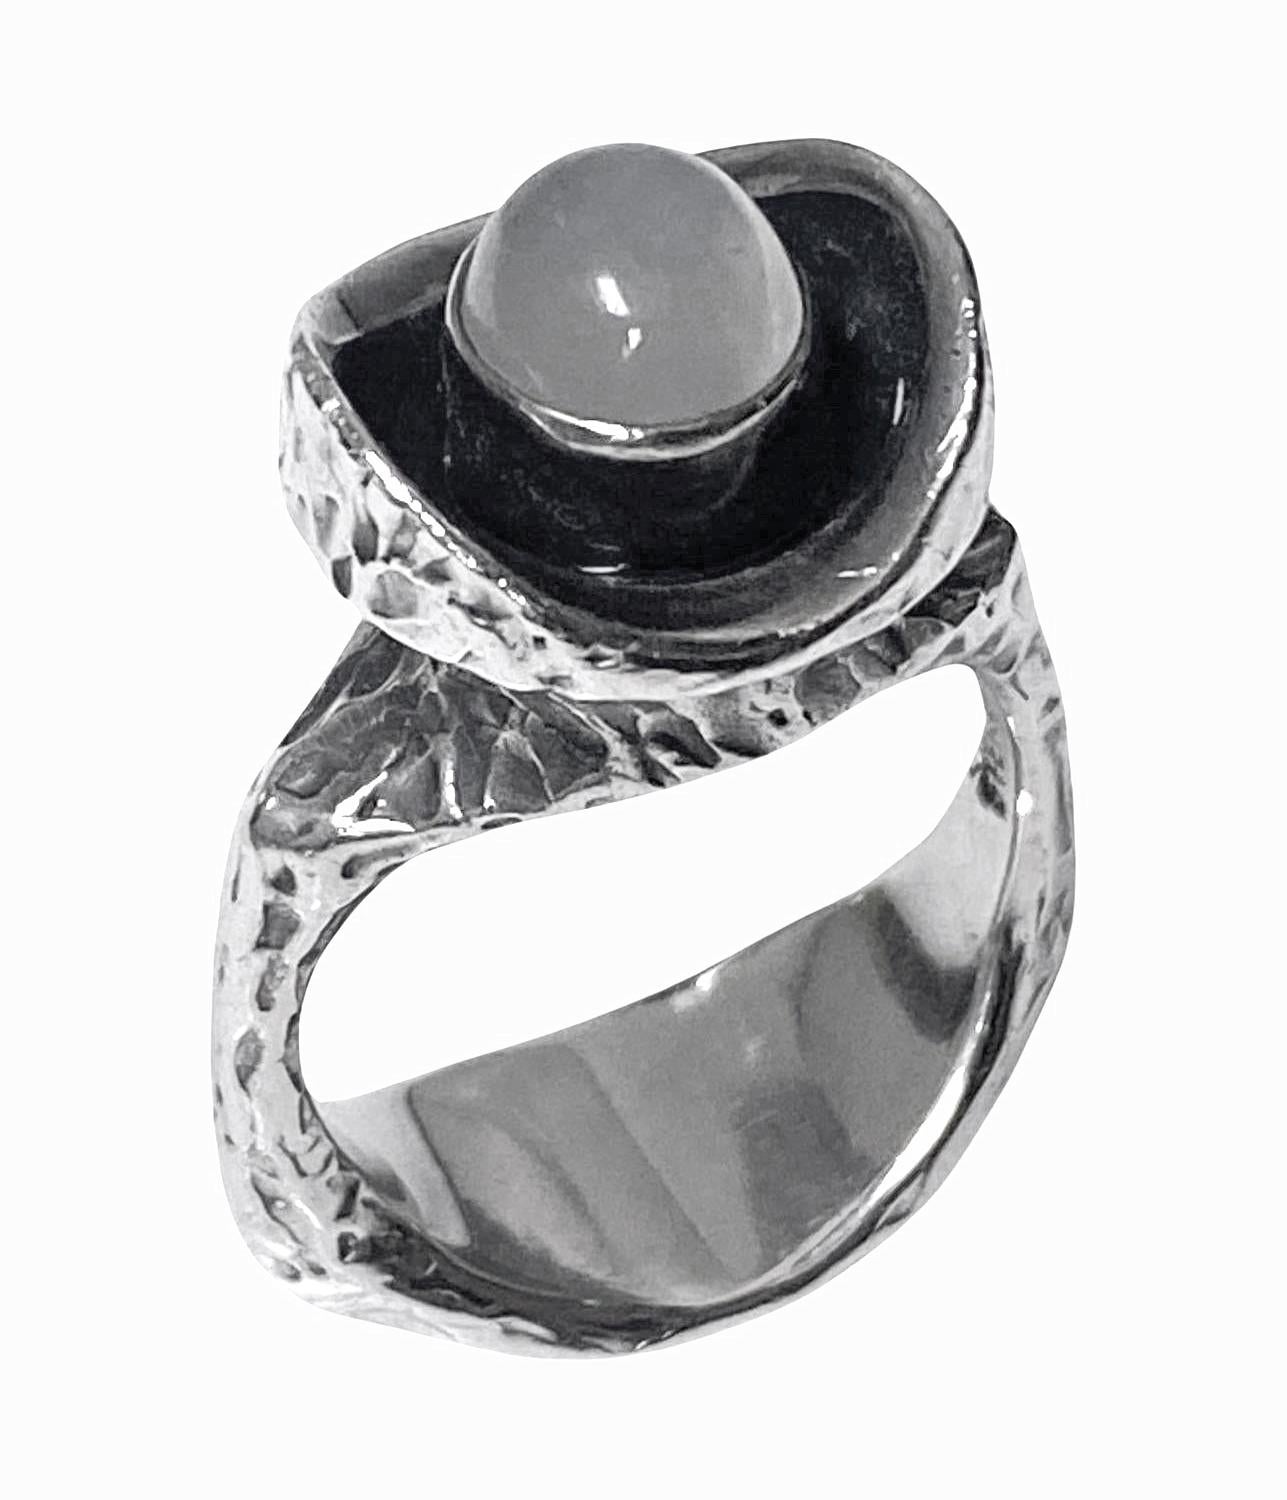 Walter Schluep Skulpturaler handgefertigter Ring aus Sterlingsilber, C.1970. Die konkave Oberseite ist oxidiert und mit einem Mondstein besetzt, die umlaufende Fassung ist mit einer rindenähnlichen Textur versehen. Oberkante ca. 14,70 mm. Ring Größe